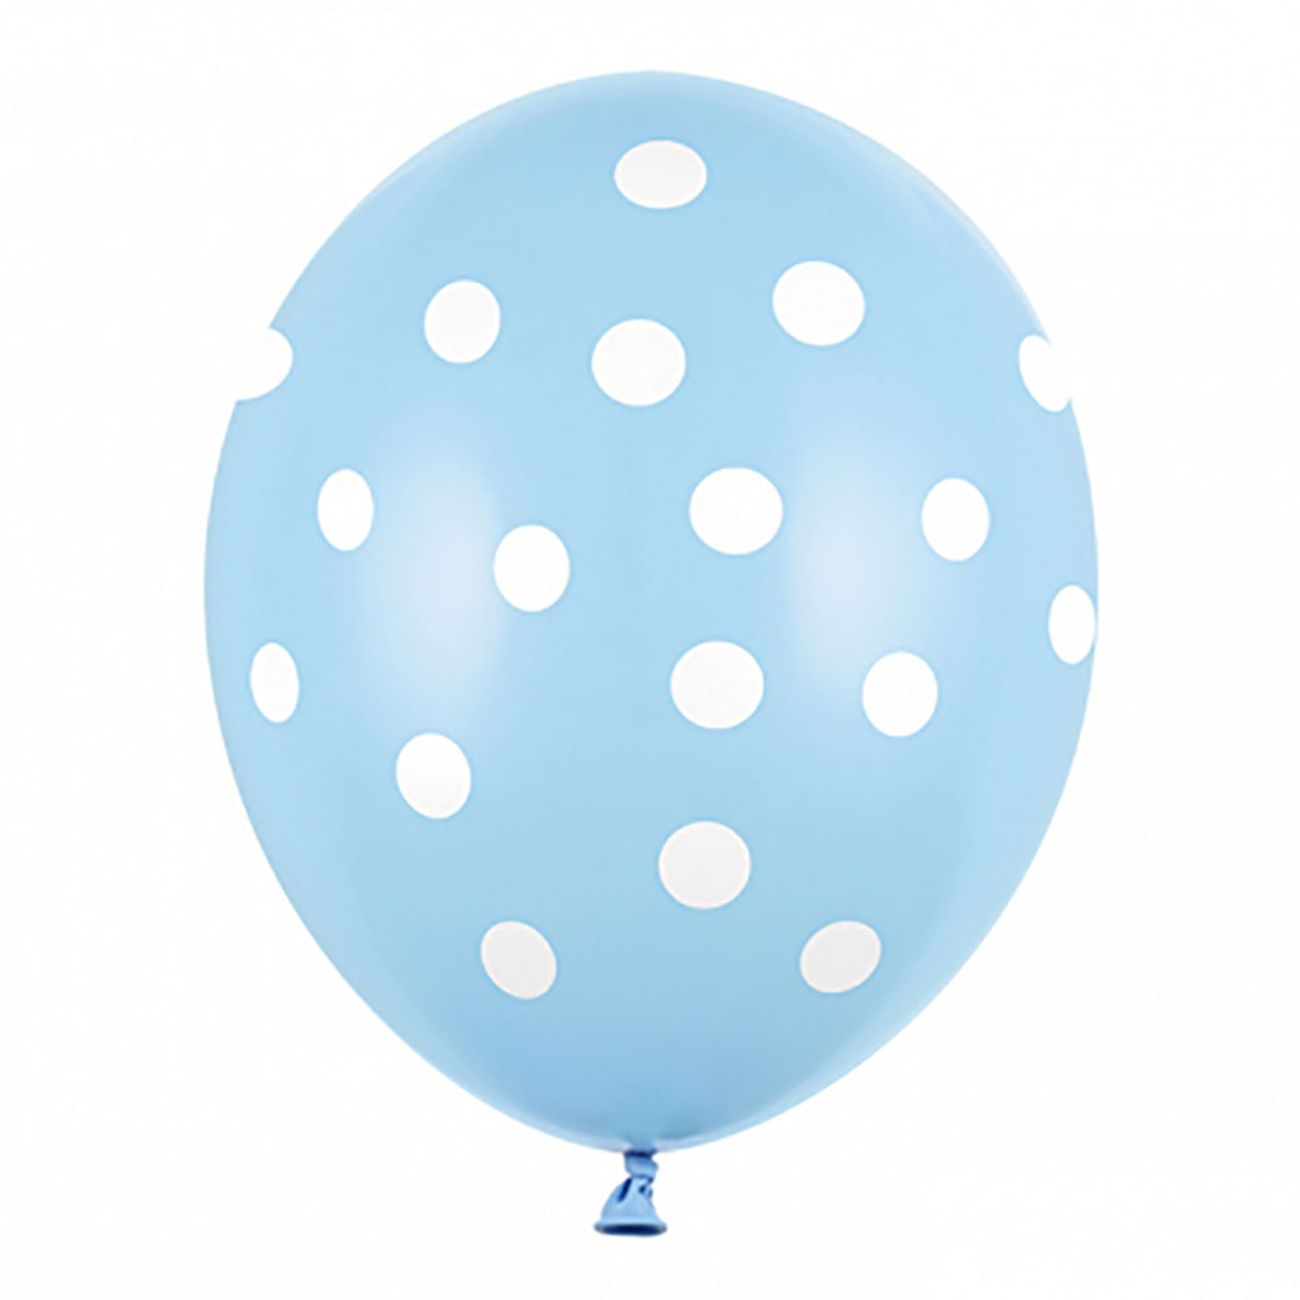 blaa-ballonger-med-prickar-81858-1